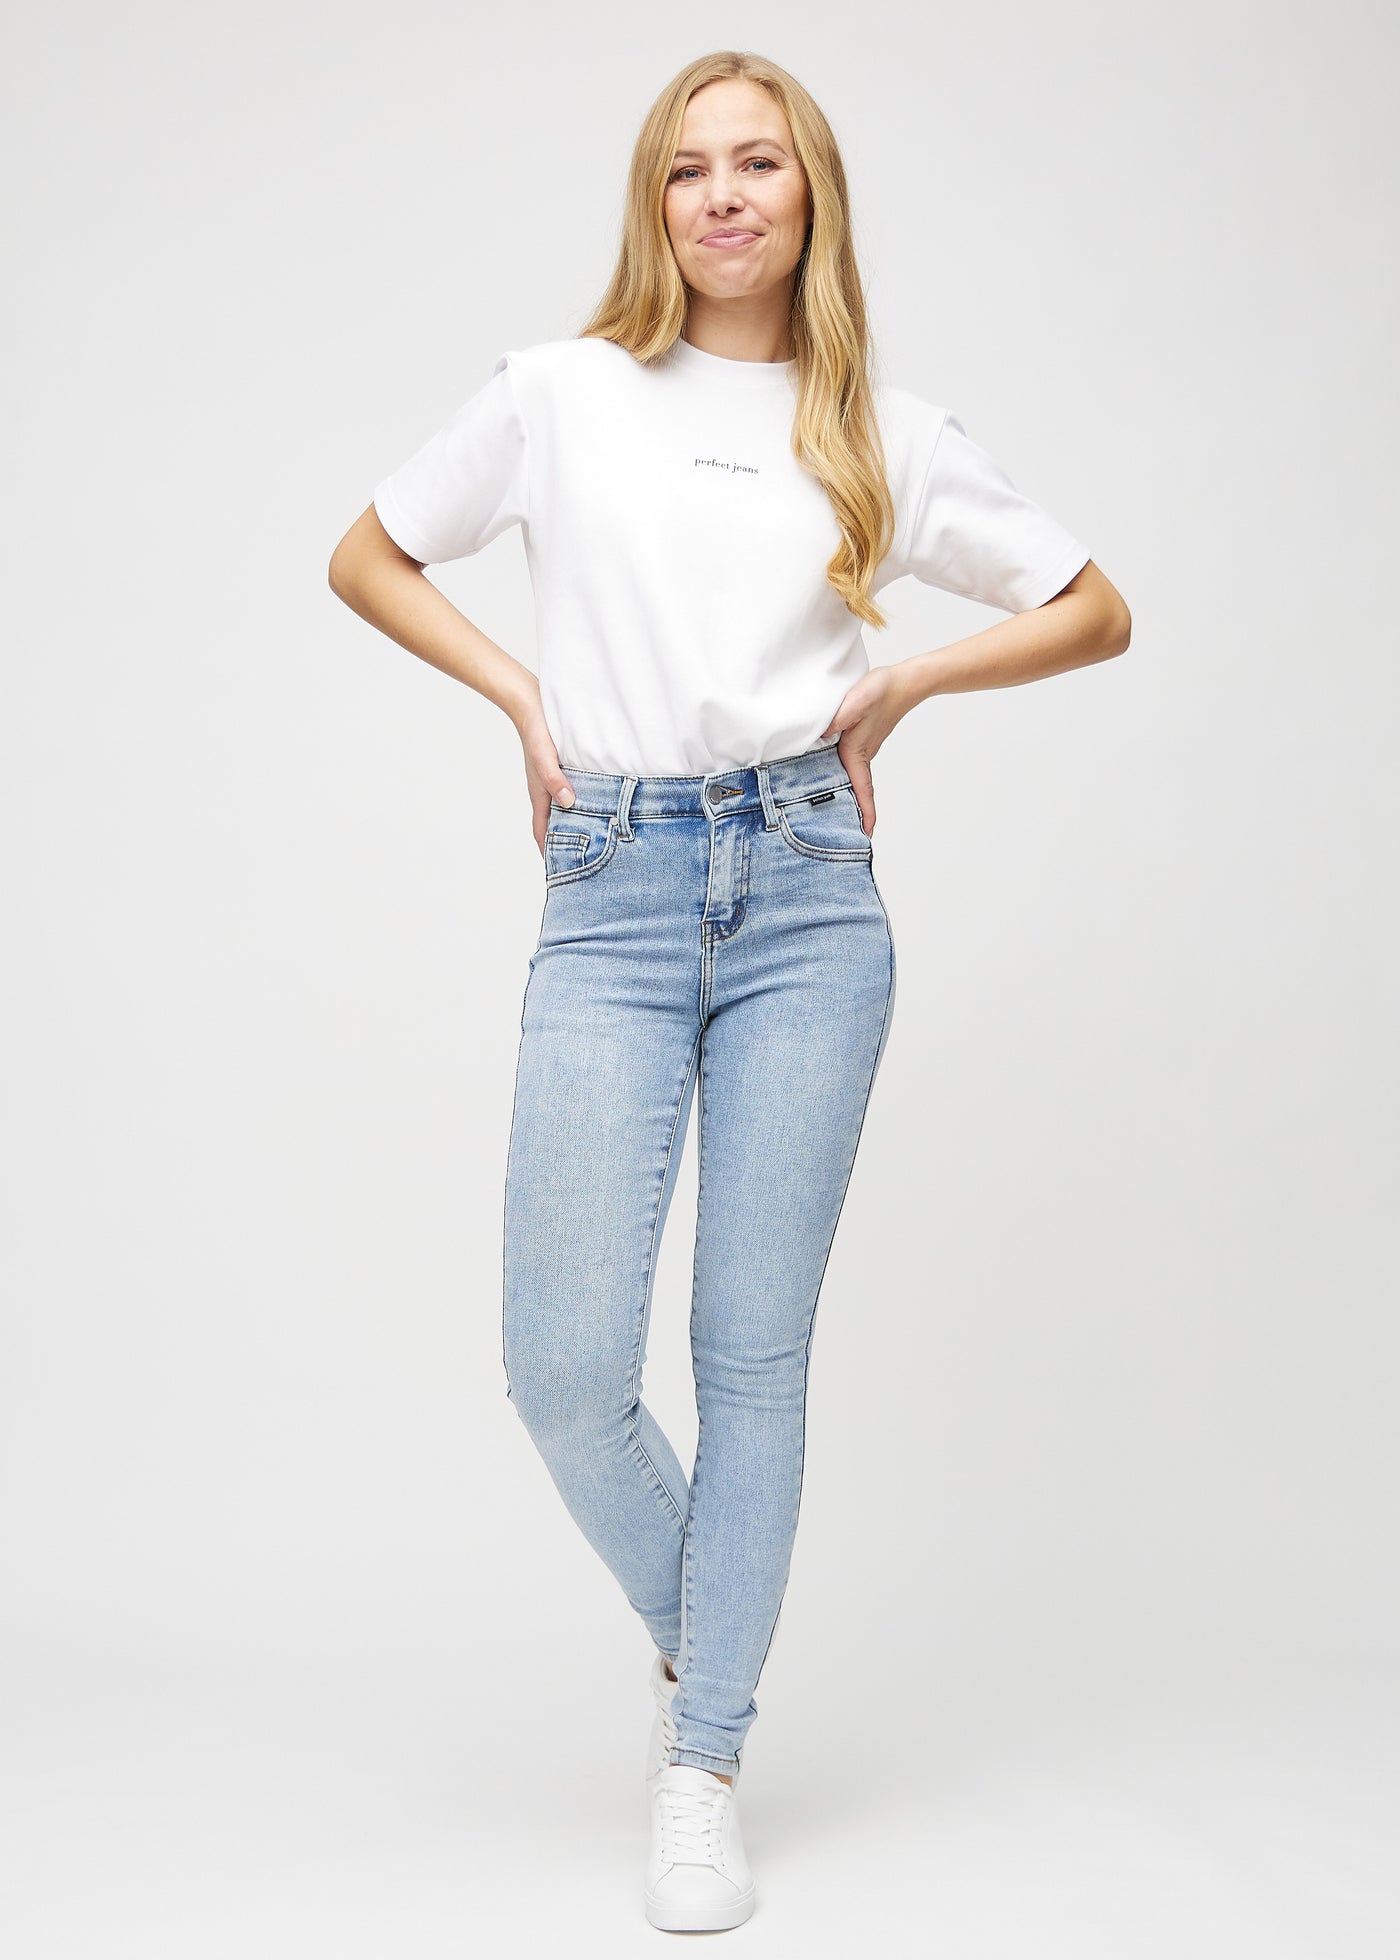 Fuldt billede af model i lys denim skinny jeans.